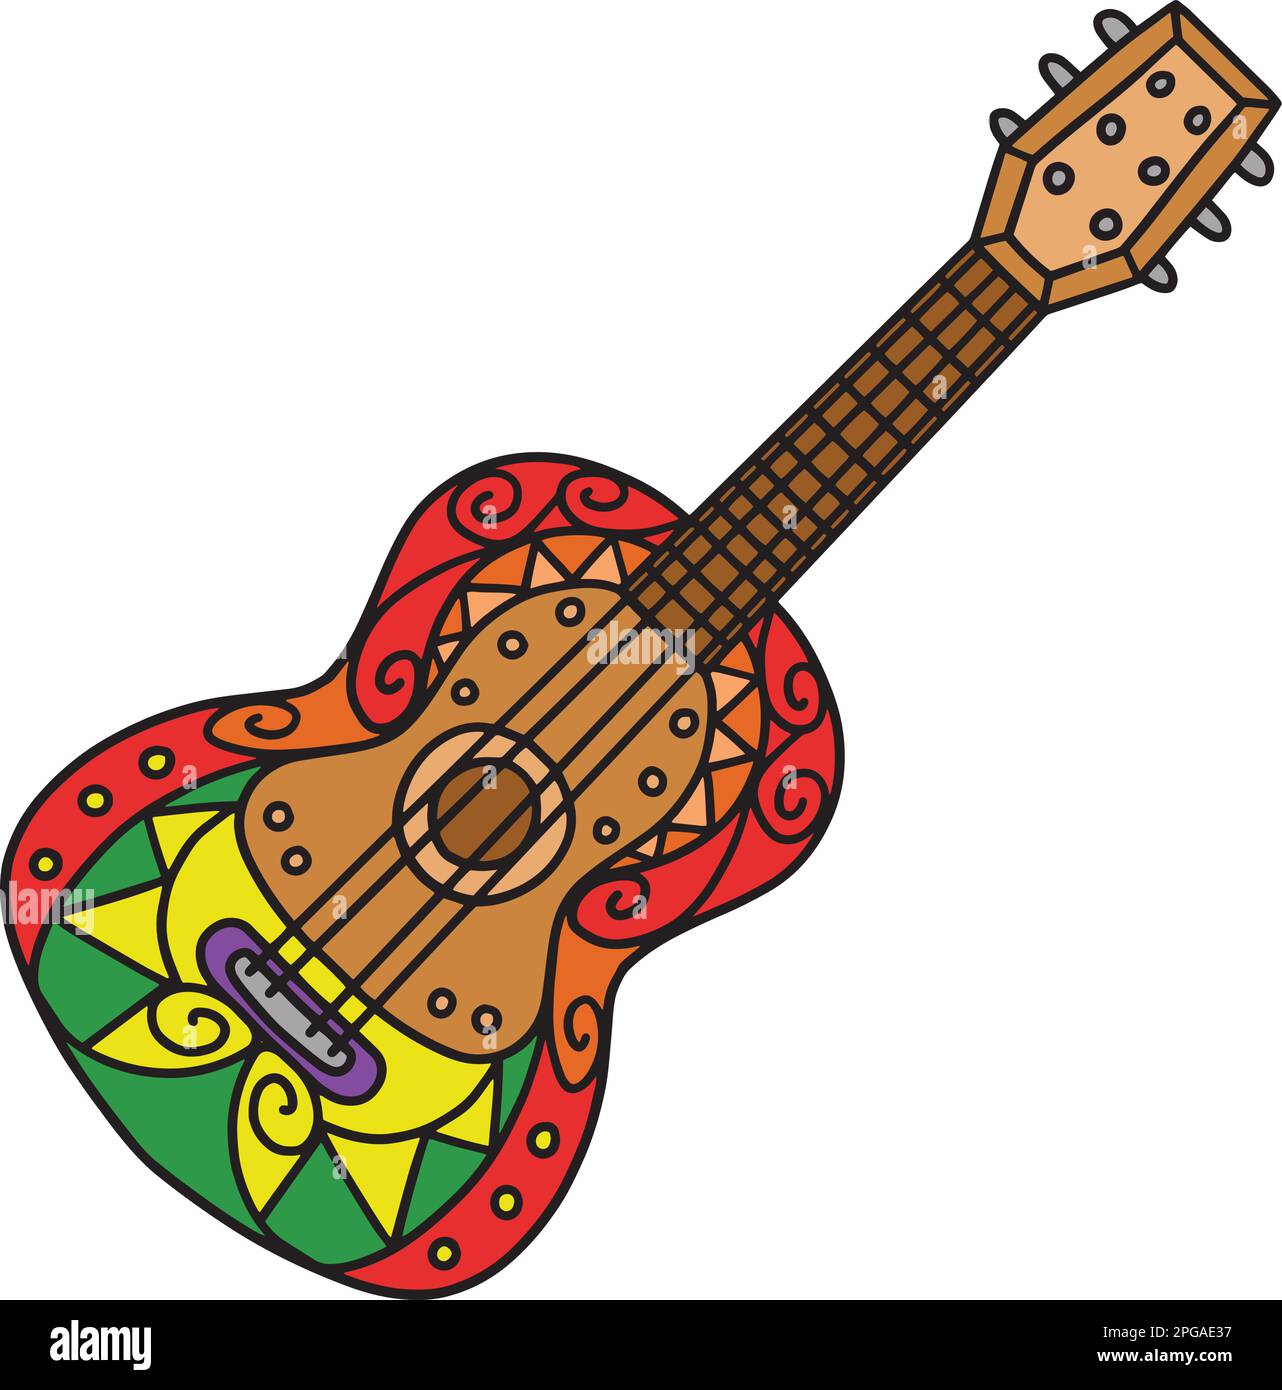 guitare inspiration coco - Cultura